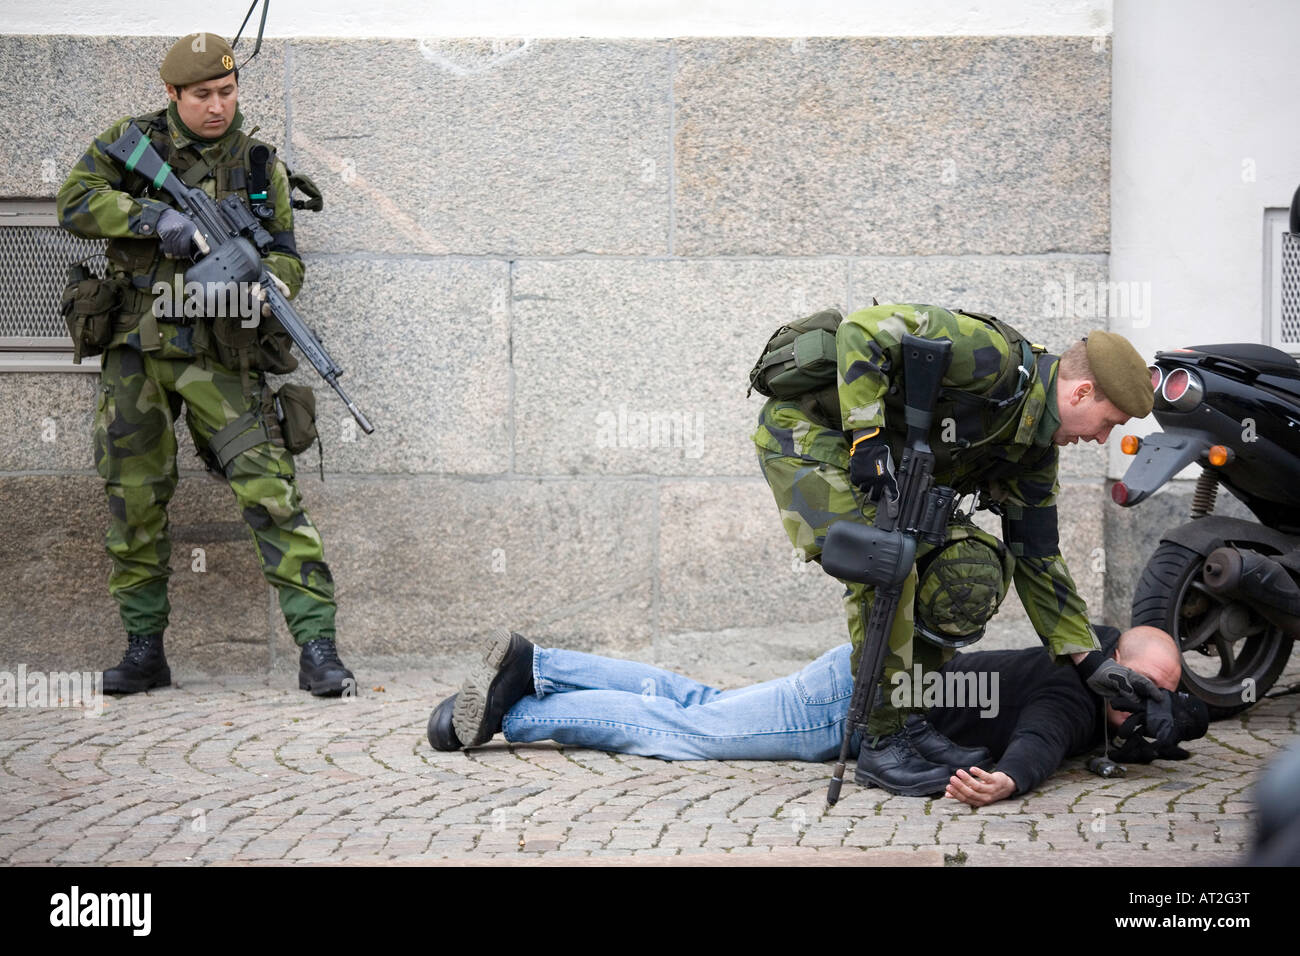 Épinglé à civils par des soldats au sol à partir de la Garde côtière suédoise, la pratique de la guerre de défense contre le terrorisme Banque D'Images